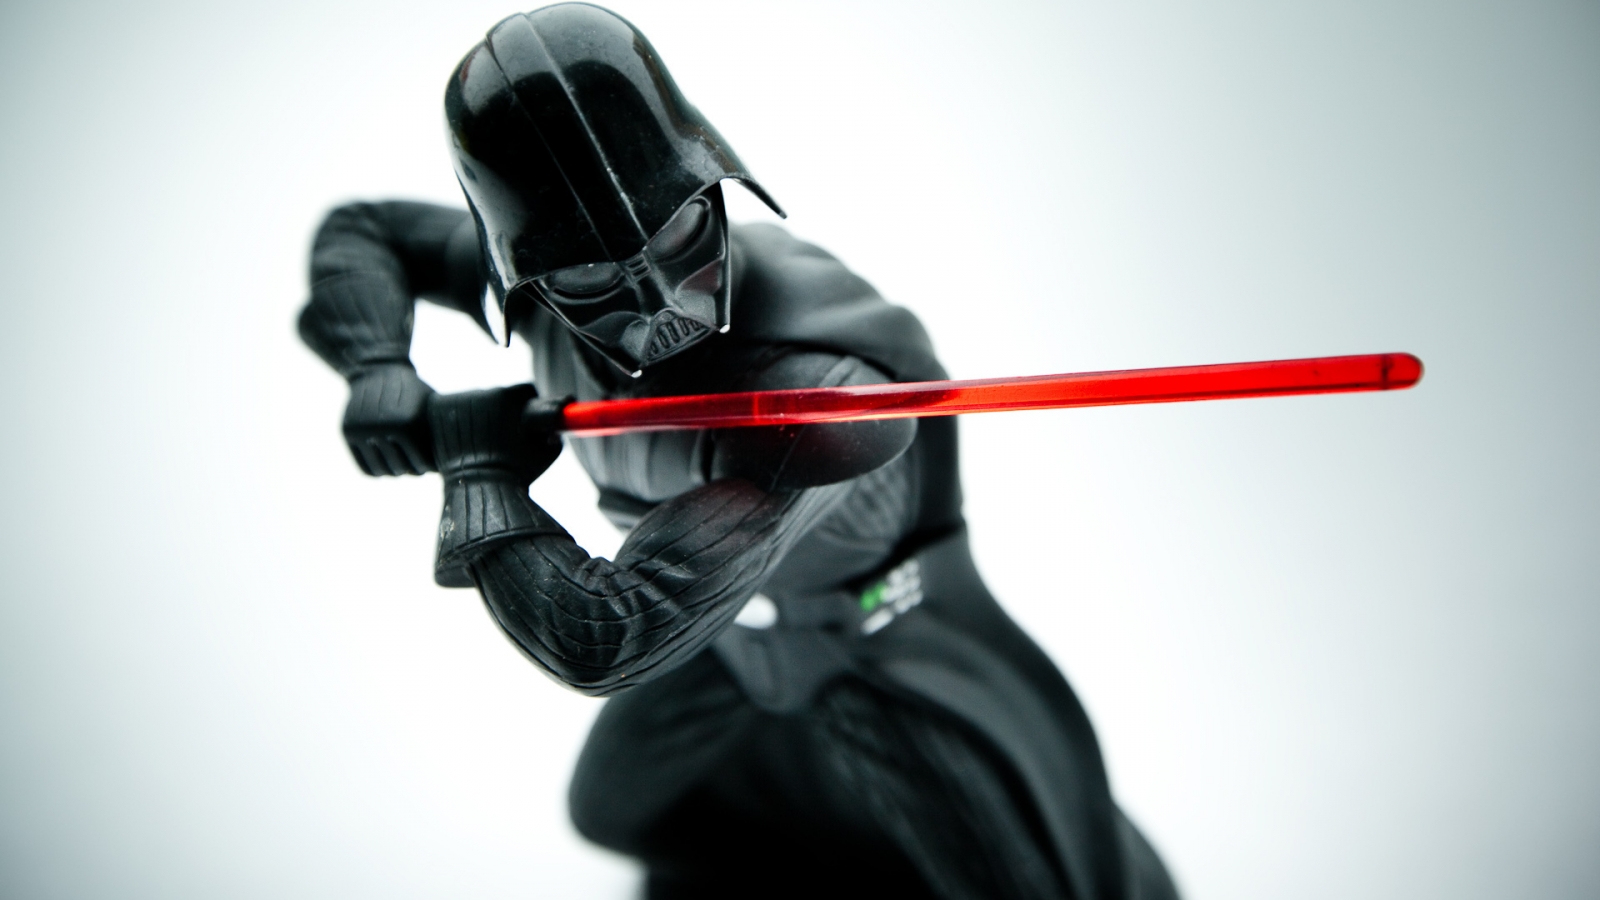 Star Wars Darth Vader for 1600 x 900 HDTV resolution